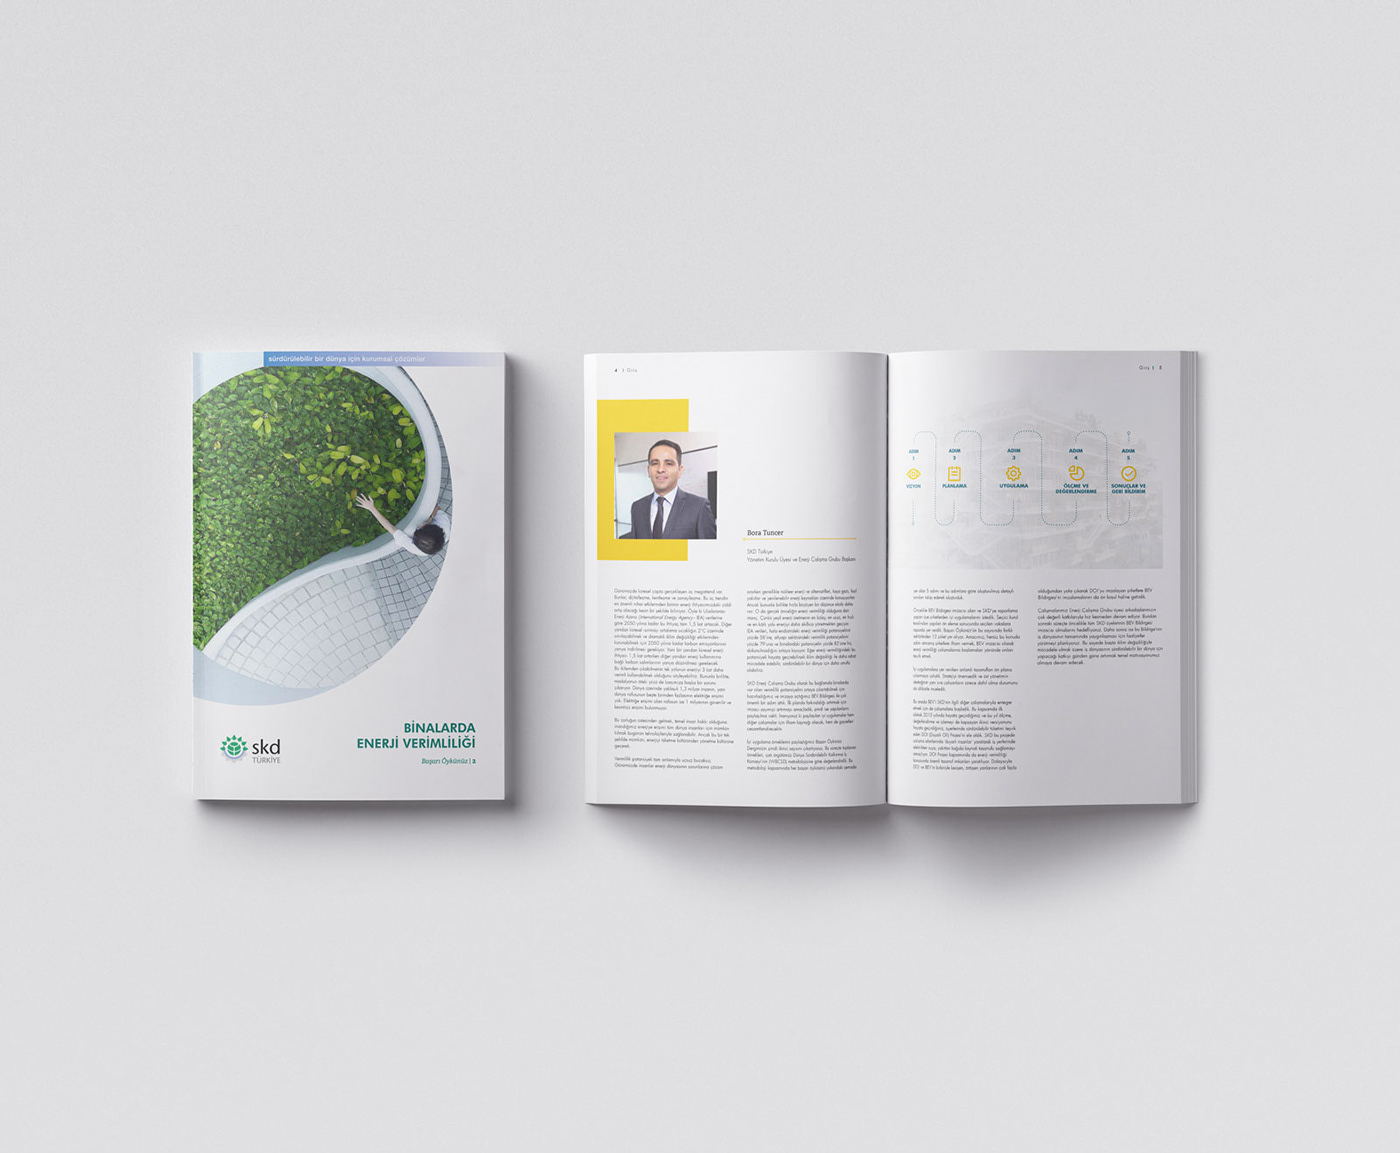 SKD Sürdürülebilir Kalkınma Derneği sürdürülebilir enerji verimliliği enerji sürdürülebilirlik Tolgahan Akbulut rapor tasarımı rapor report design